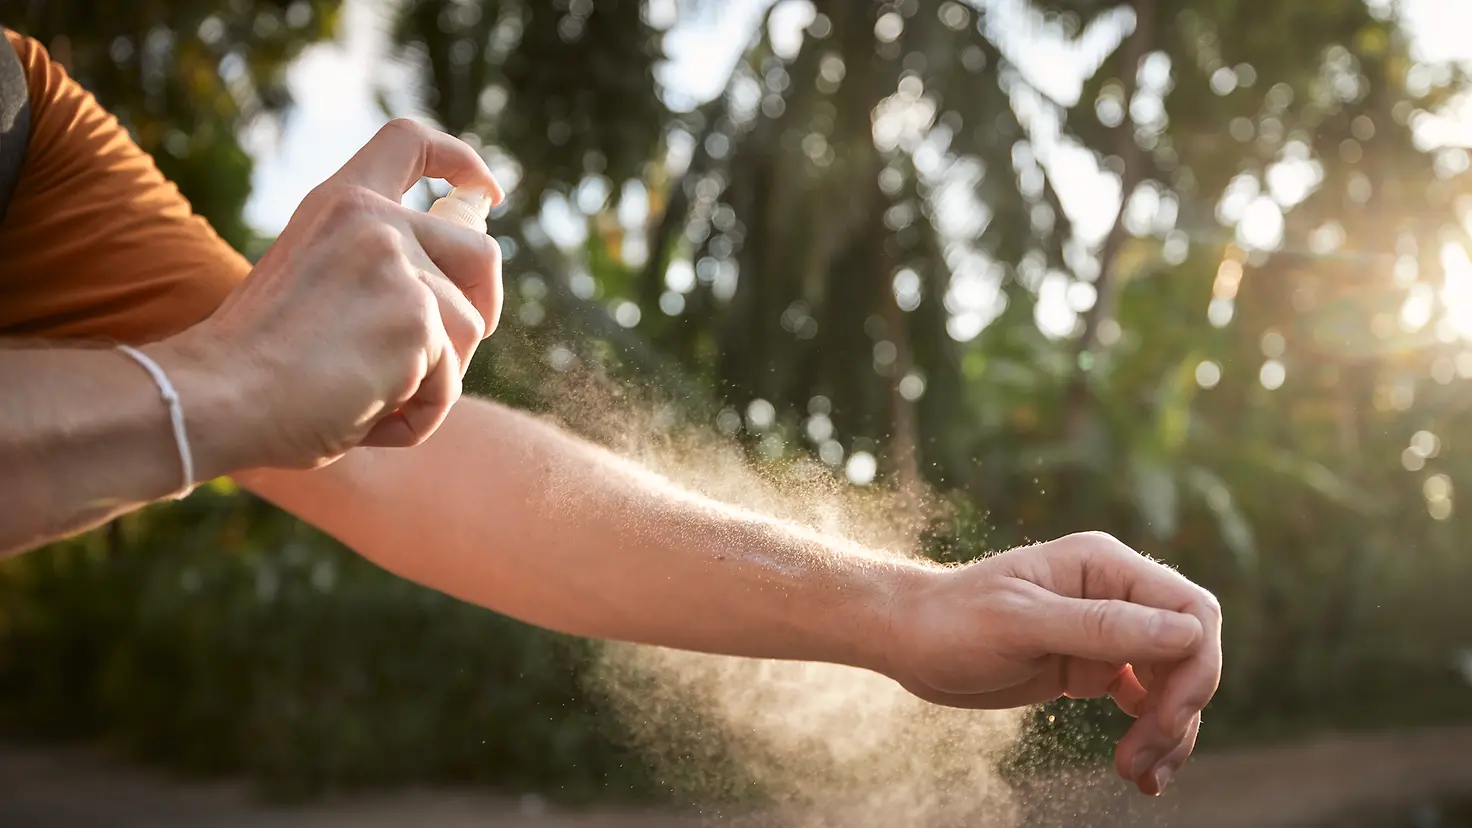 Ein Mann besprüht seinen Arm mit einem Mückenschutzmittel